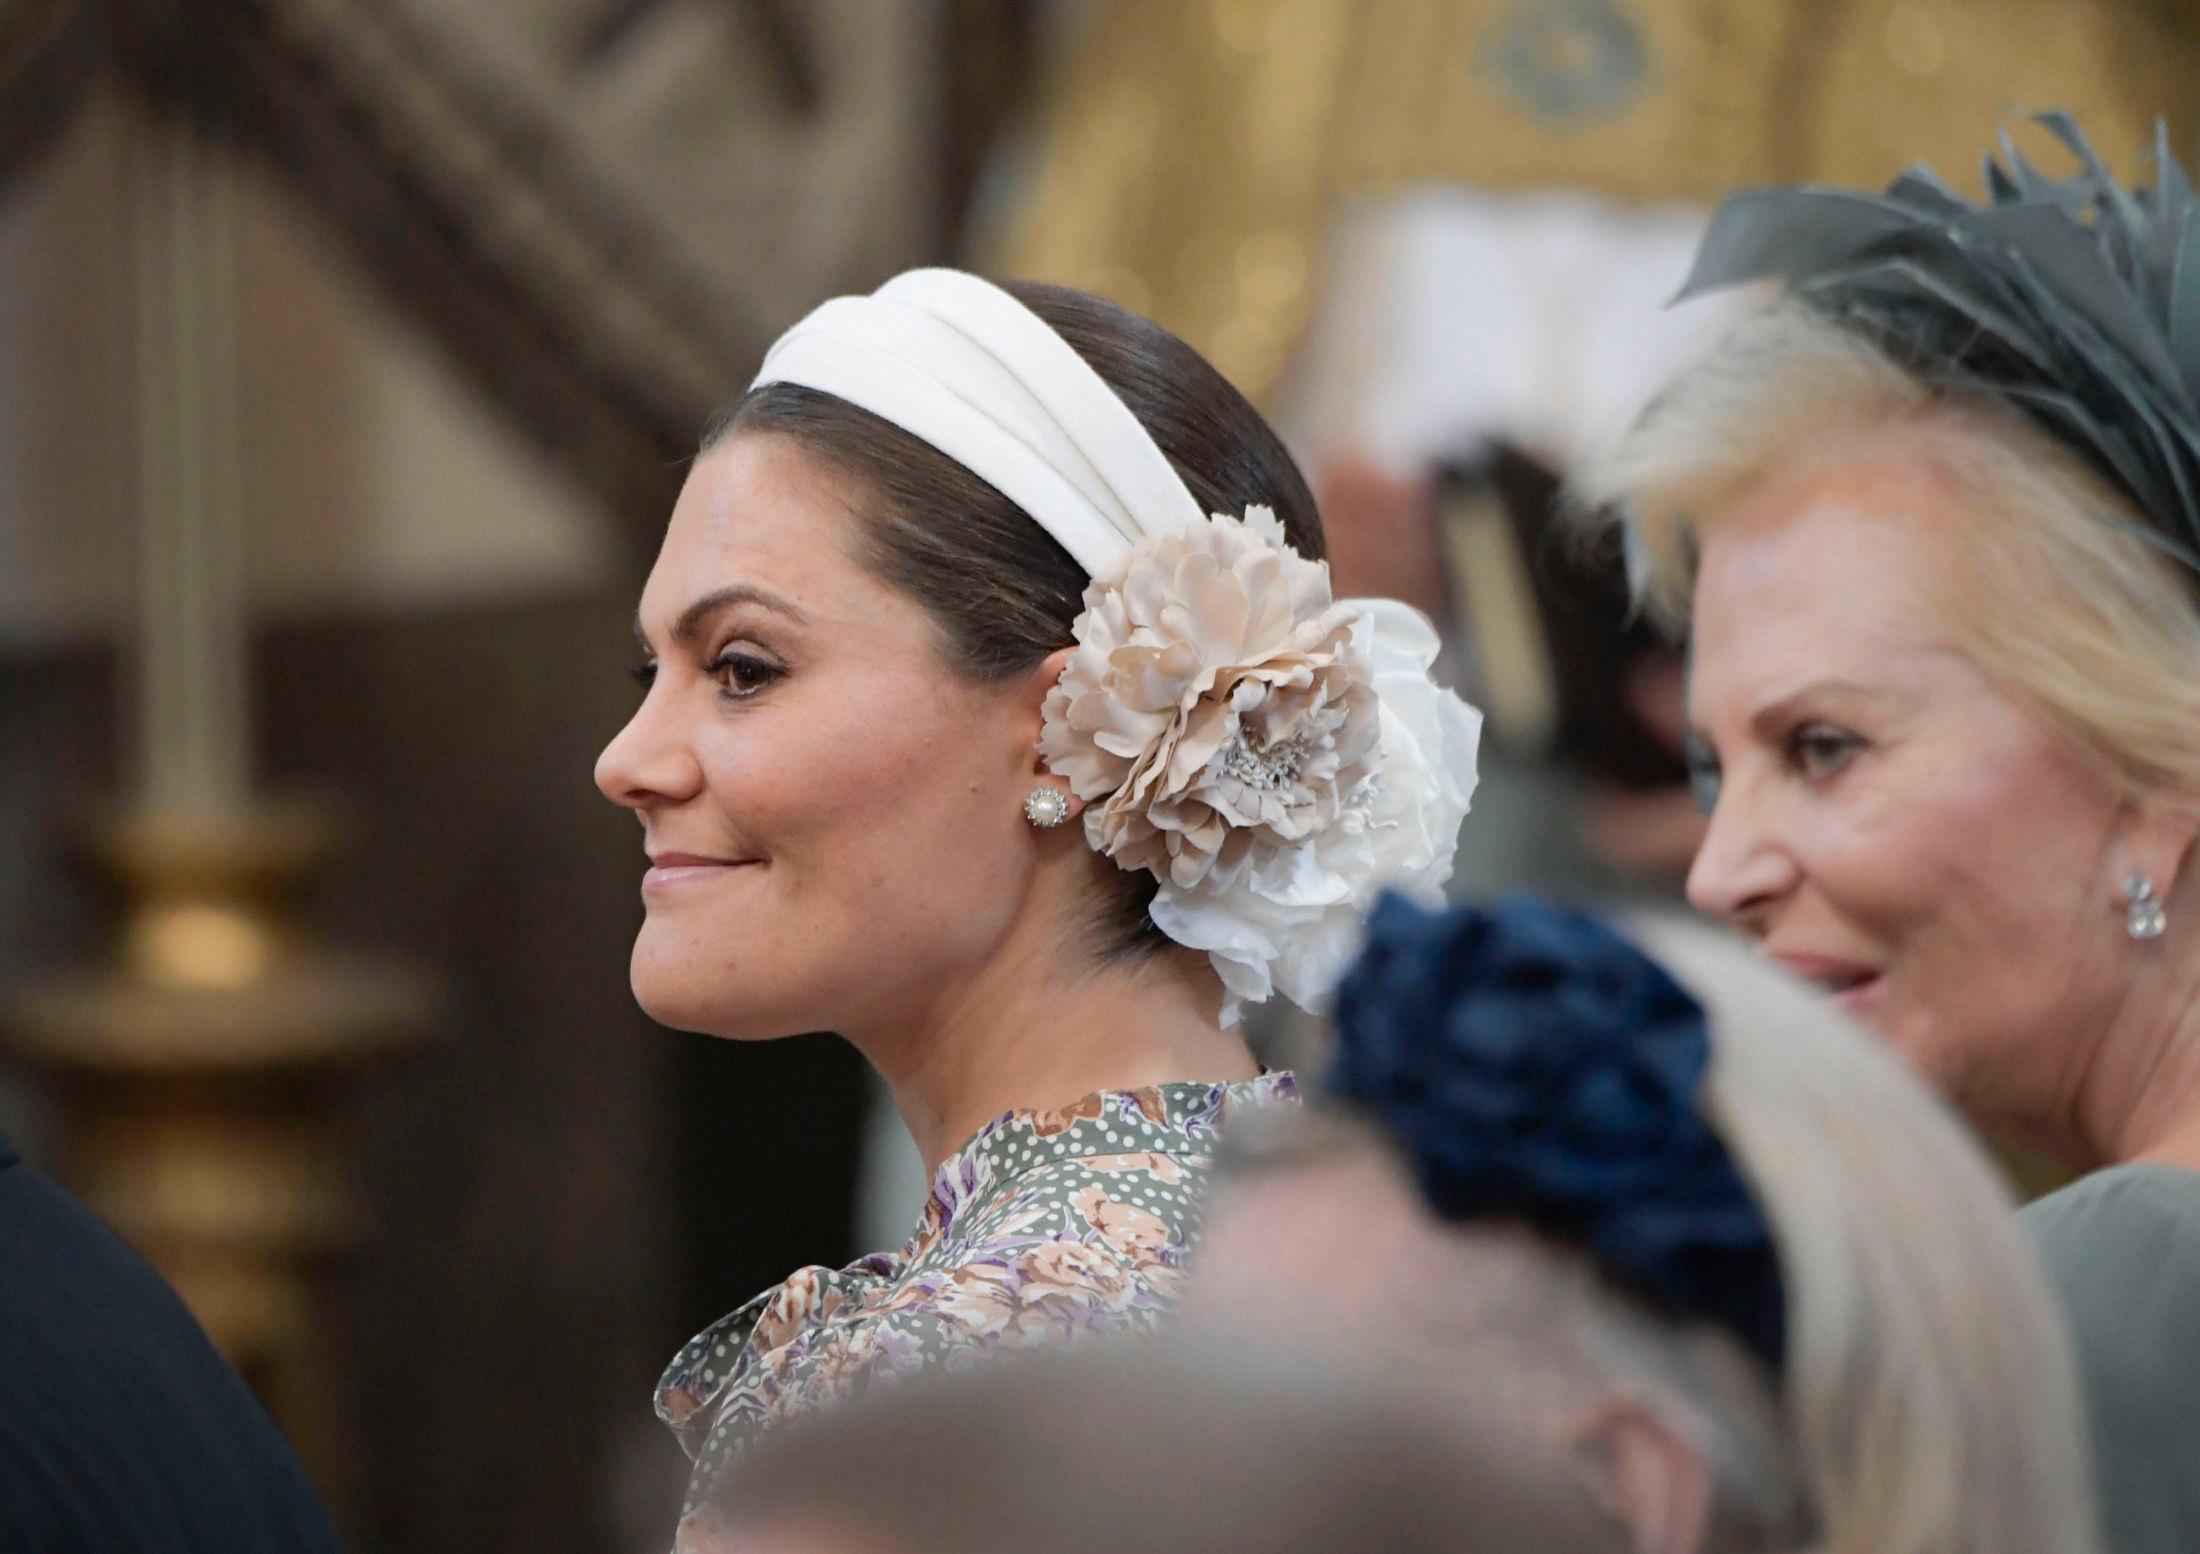 BLOMSTRET: Kronprinsesse Victoria med en stor blomst i håret i dåpen til prinsesse Adrienne. Foto: Janerik Henriksson/TT